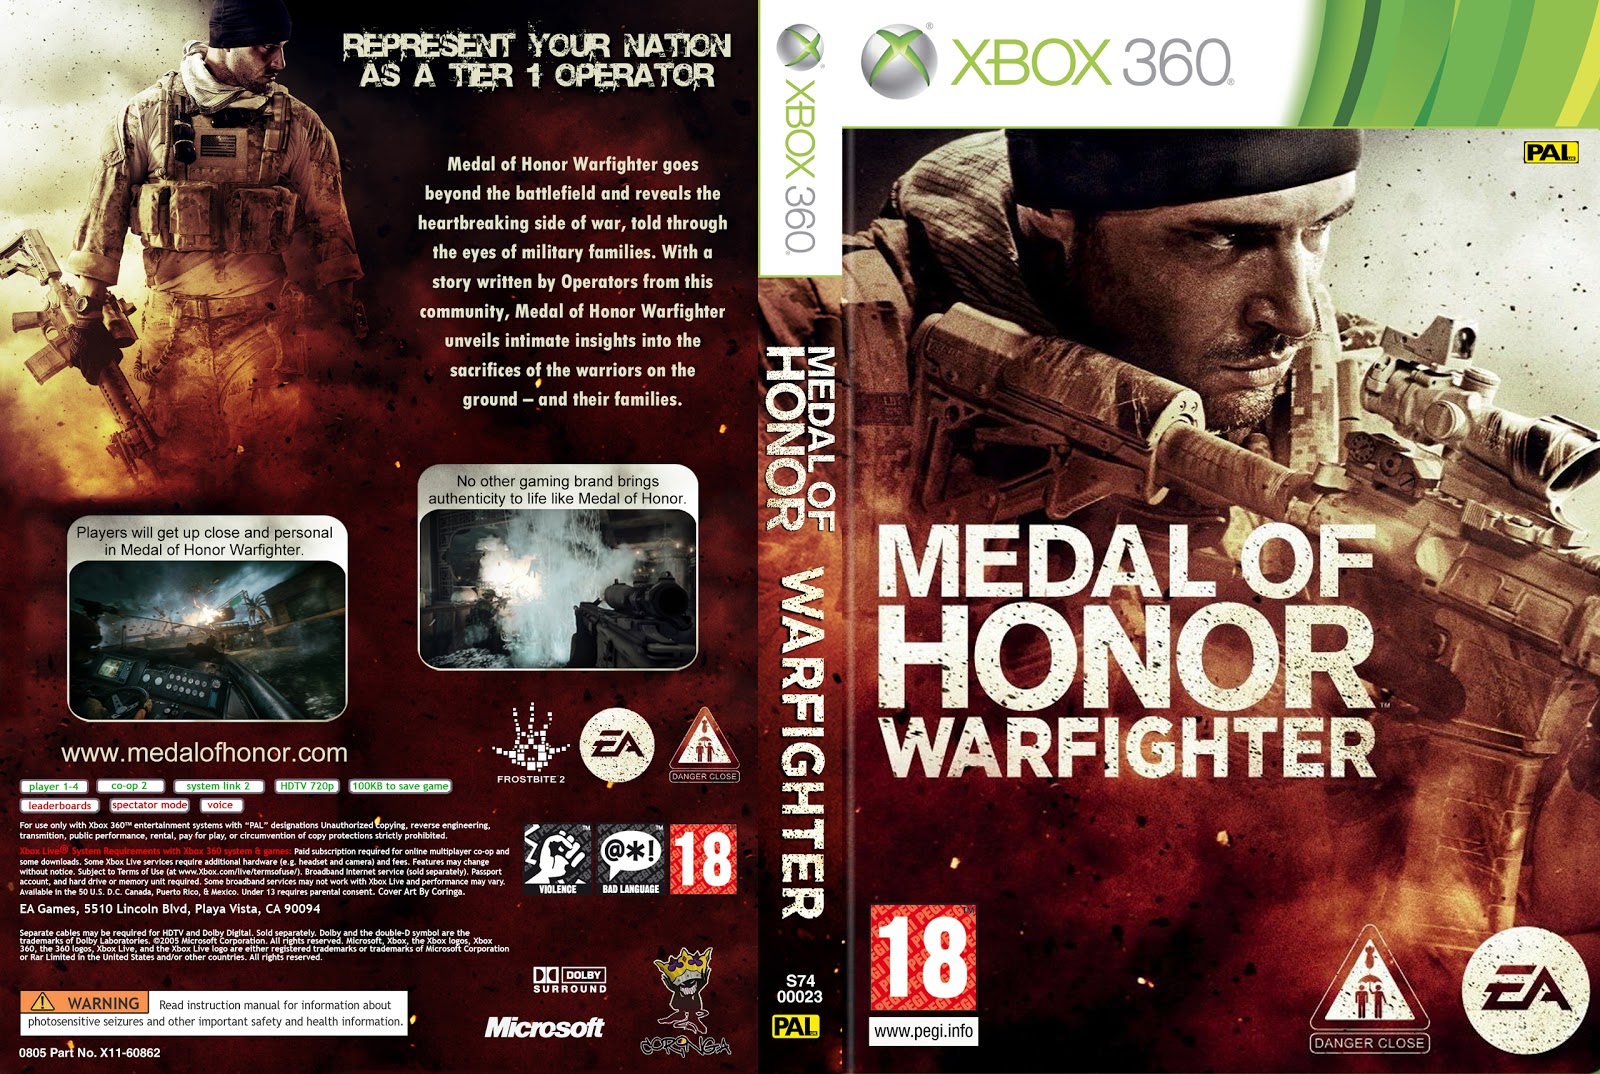 Medal of honor чит. Медаль оф хонор 2010 диск. Диск медал оф хонор. Medal of Honor Warfighter Xbox 360. Medal of Honor Xbox 360 обложка для дисков.